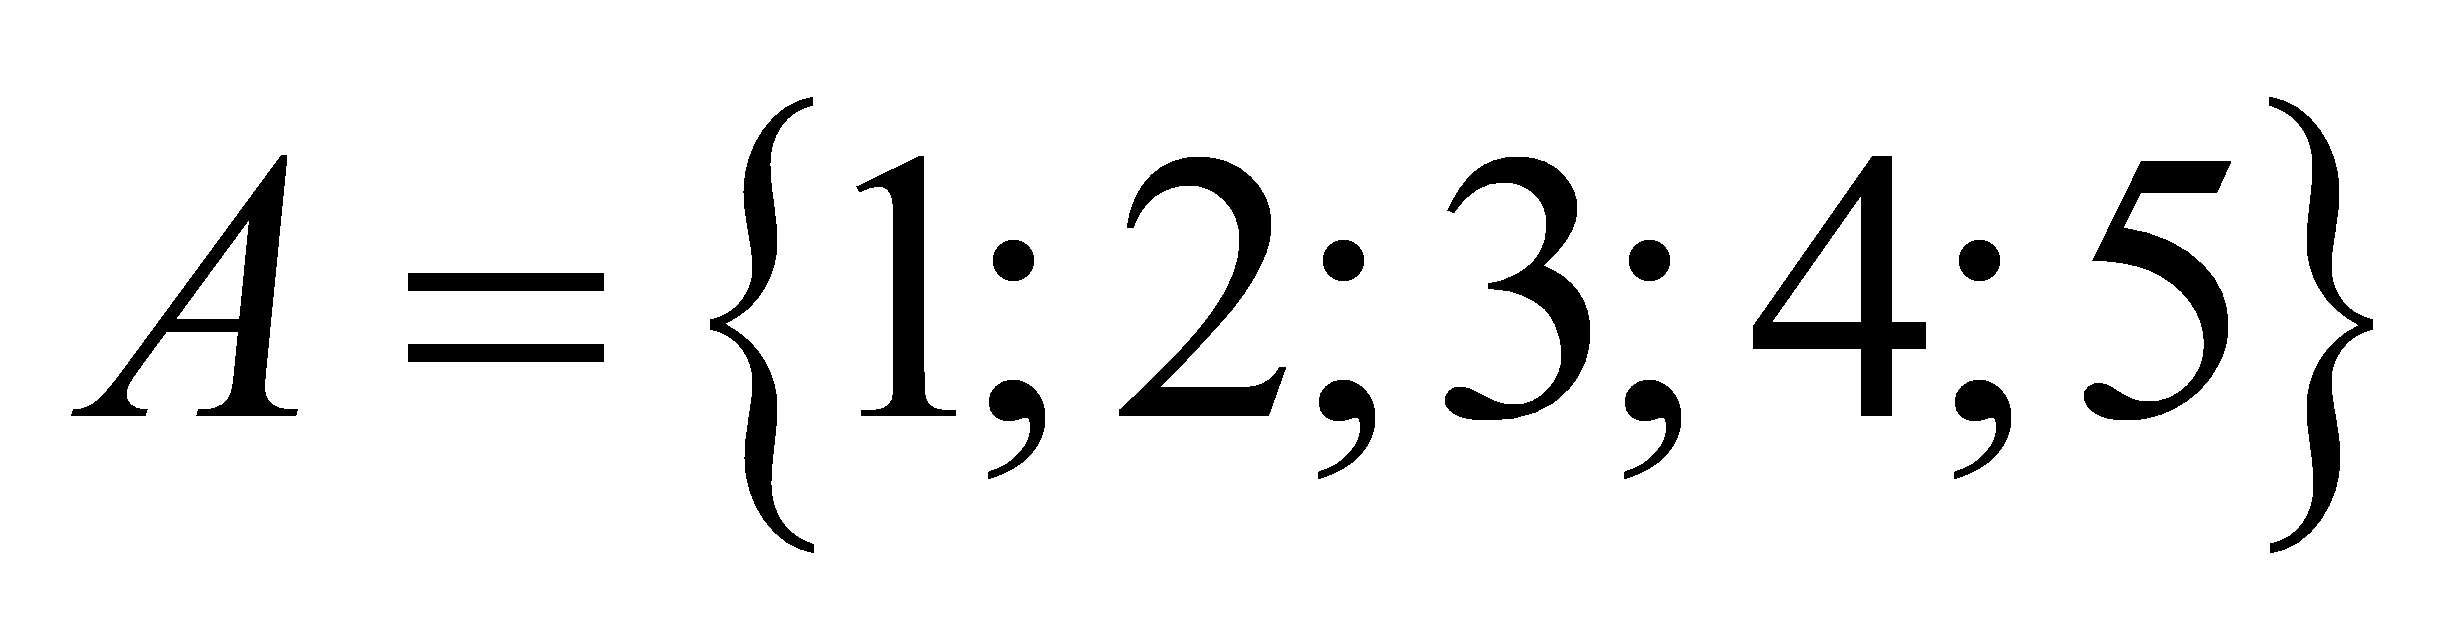 Với các chữ số 0 1 2 3 4 6 có thể lập được bao nhiêu số chẵn mỗi số gồm 5 chữ số khác nhau